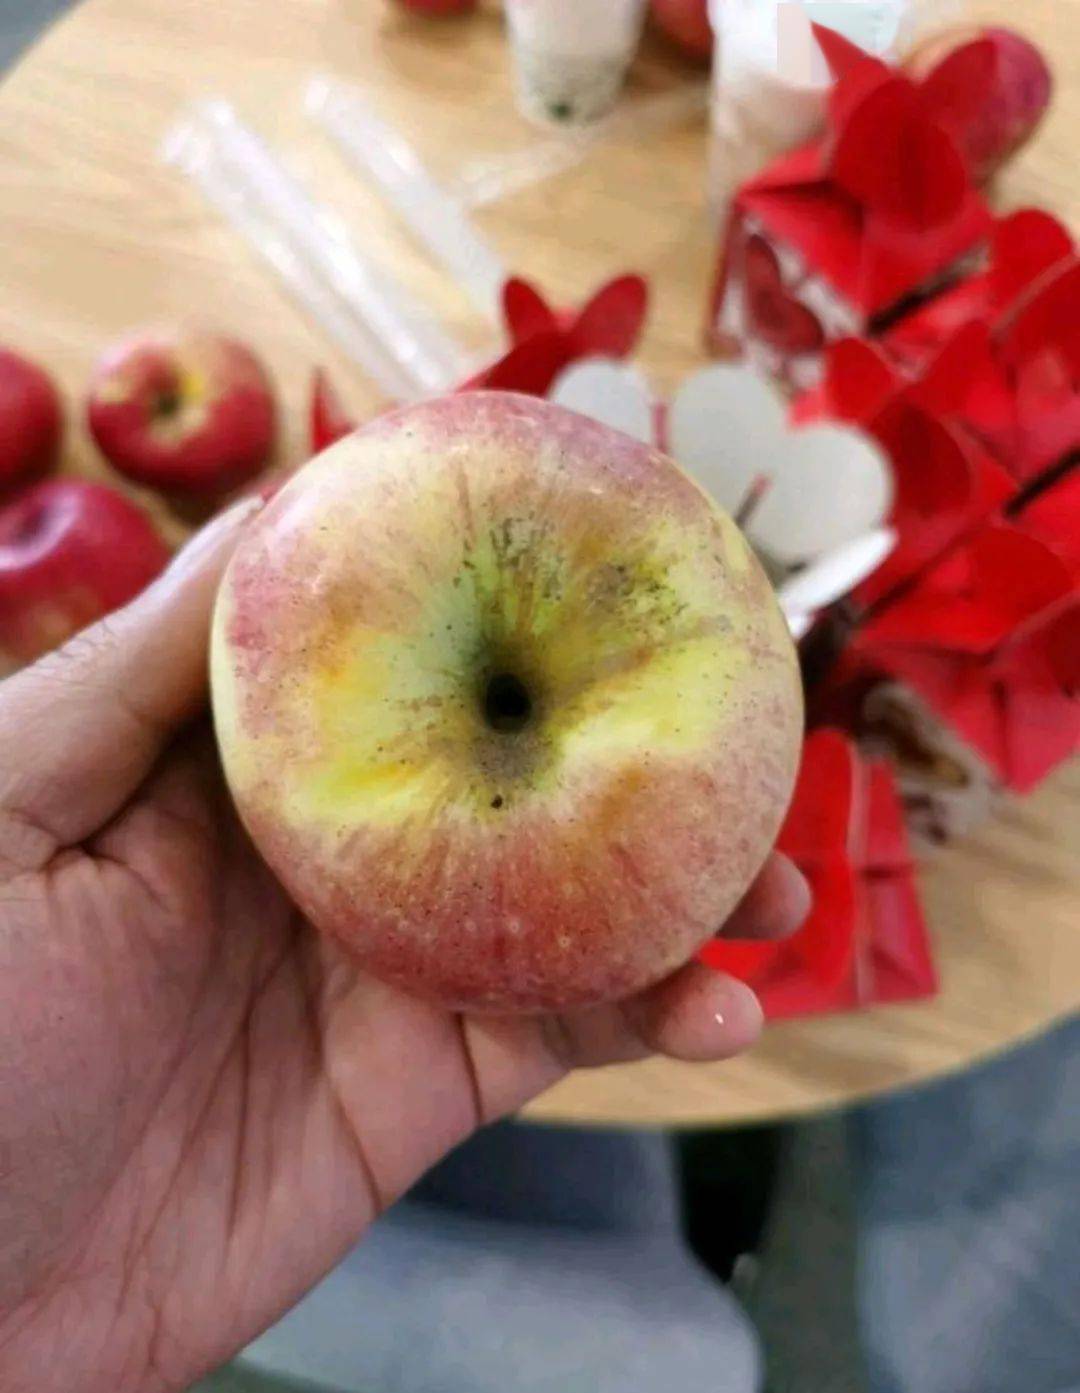 珠海最牛水果店!发烂苹果,霉苹果!商家表示:没办法,我